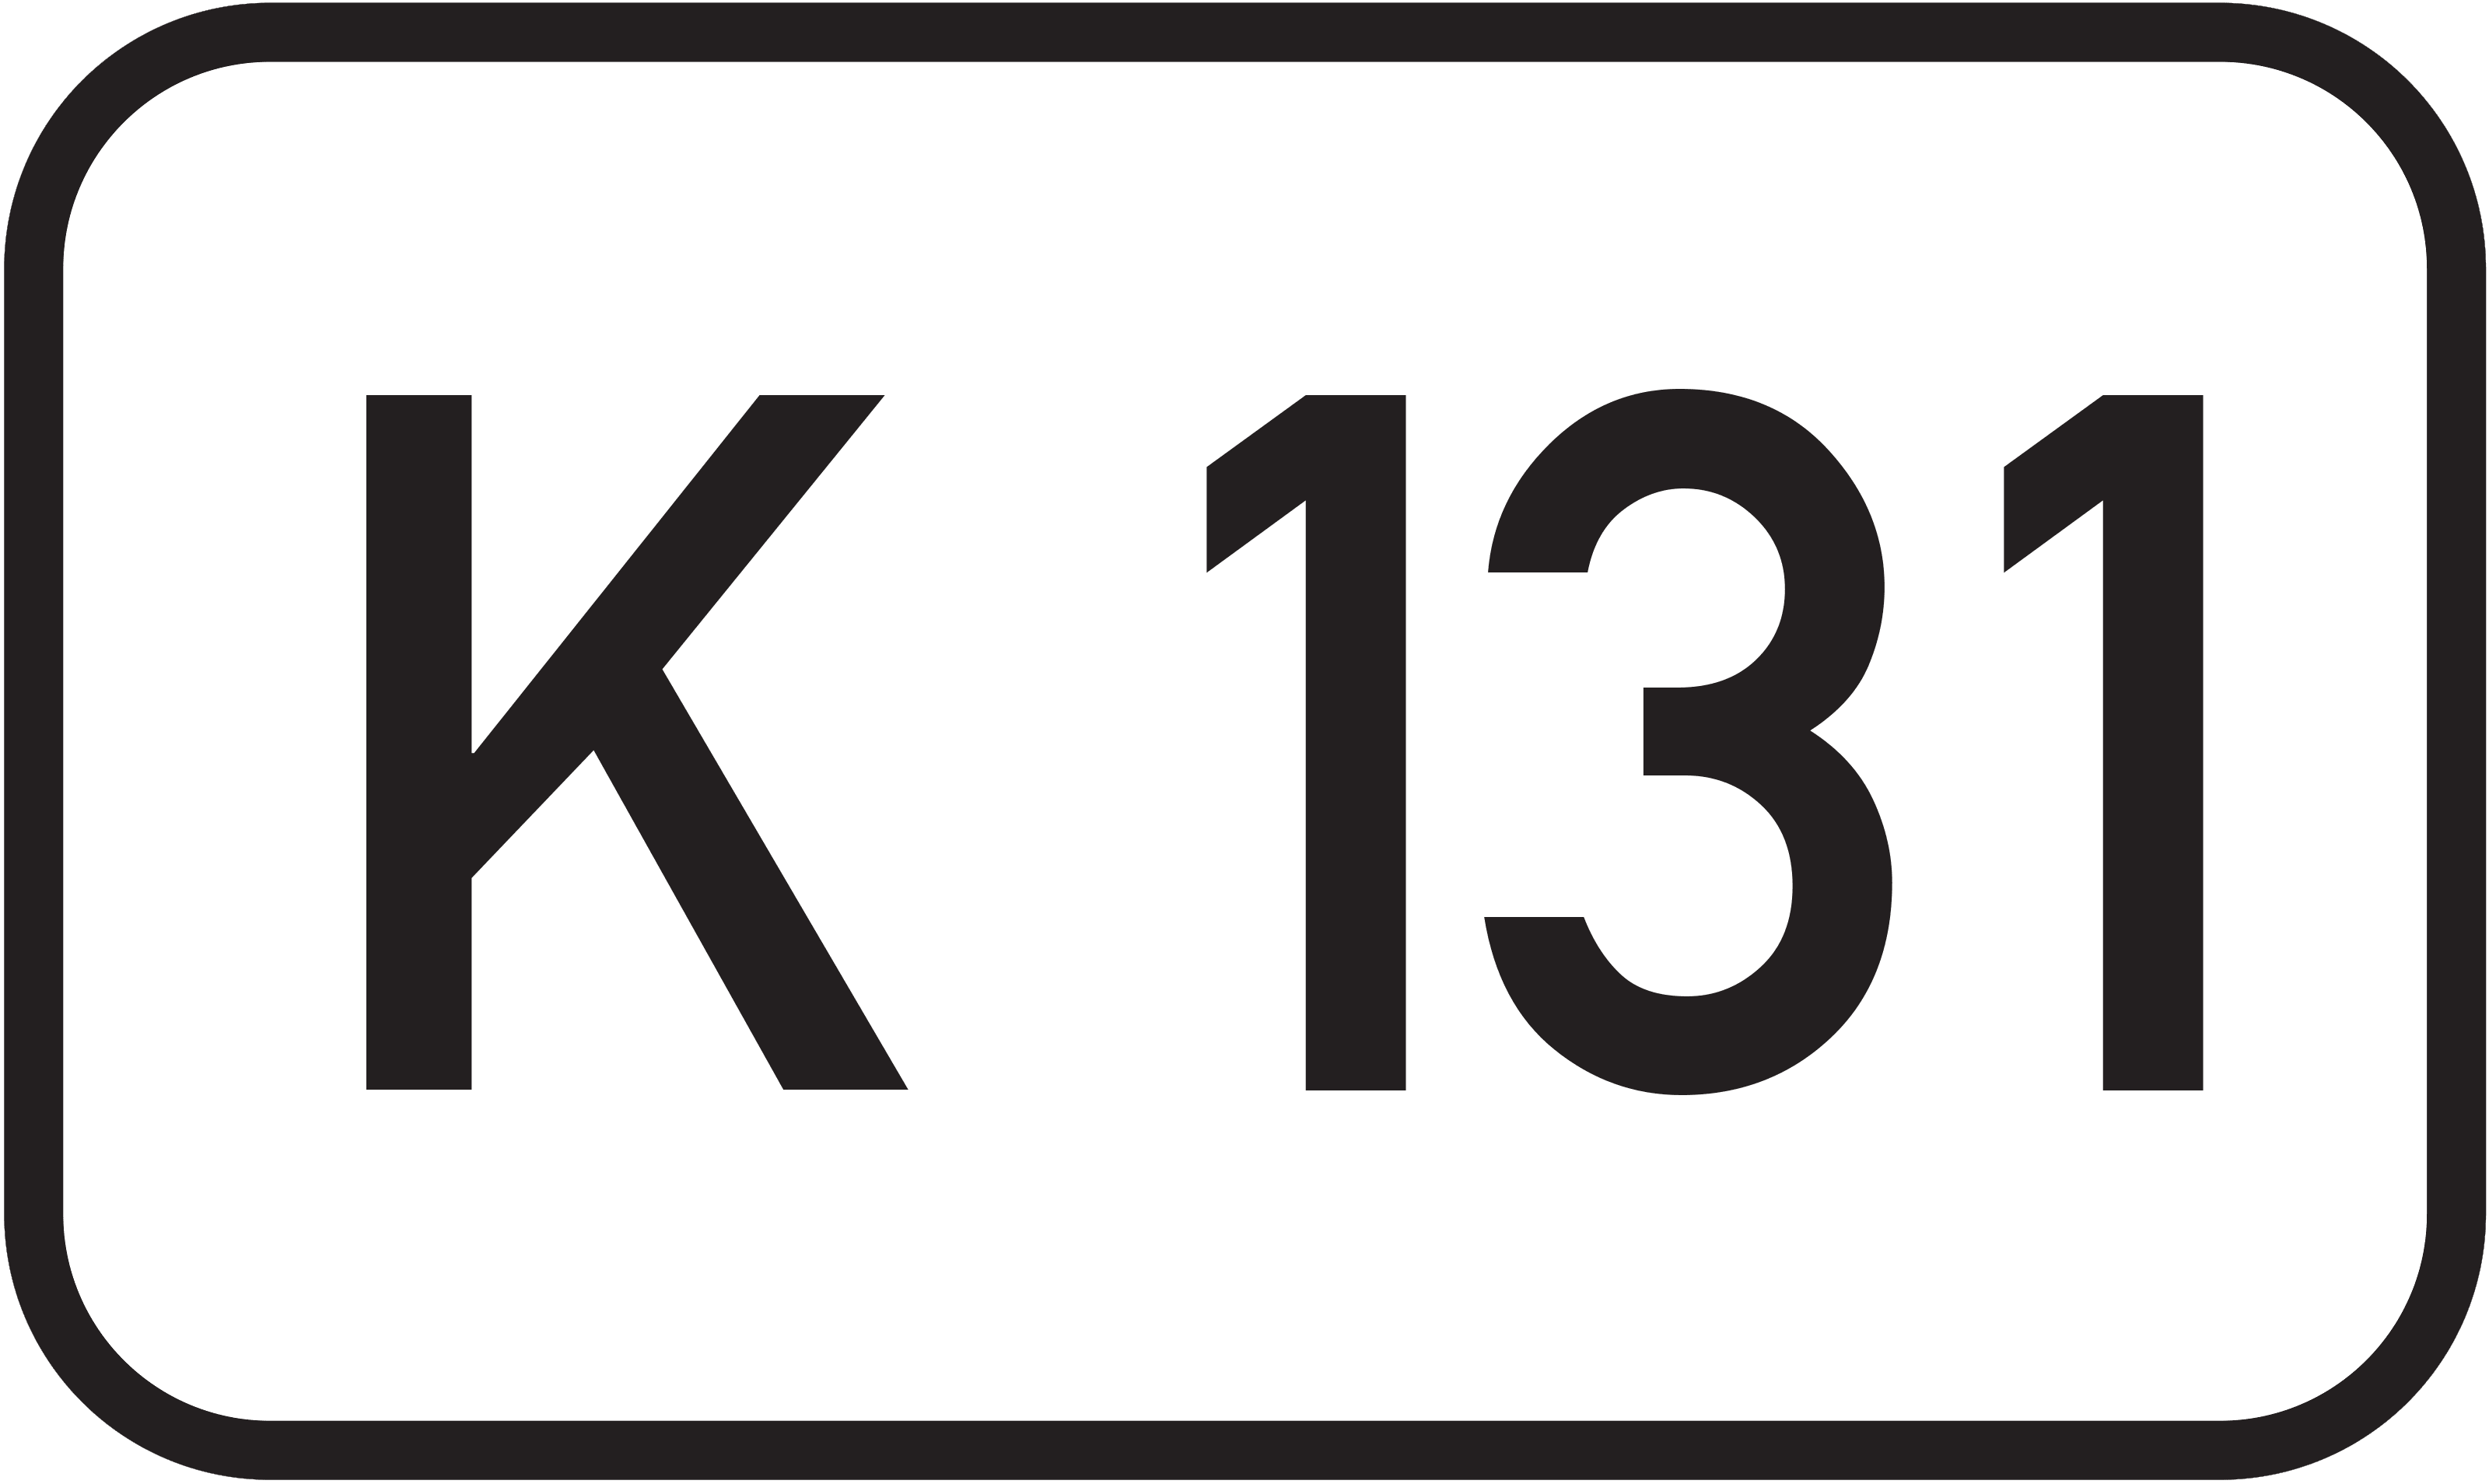 Bundesstraße K 131